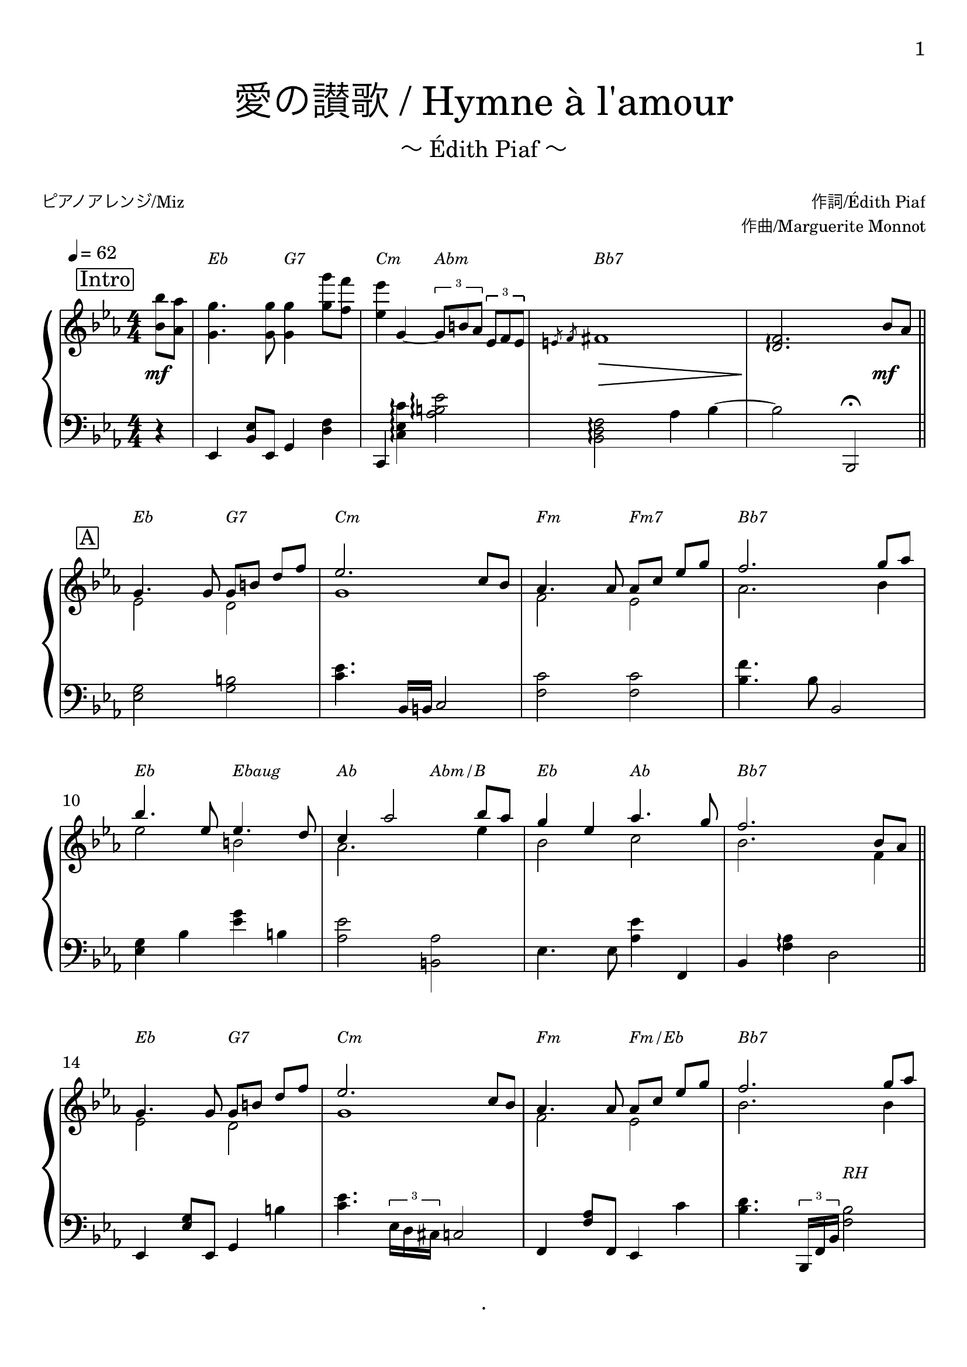 エディット・ピアフ/ Édith Piaf - 愛の讃歌/Hymne à l'amour /La Mome (ピアノソロ) by Miz